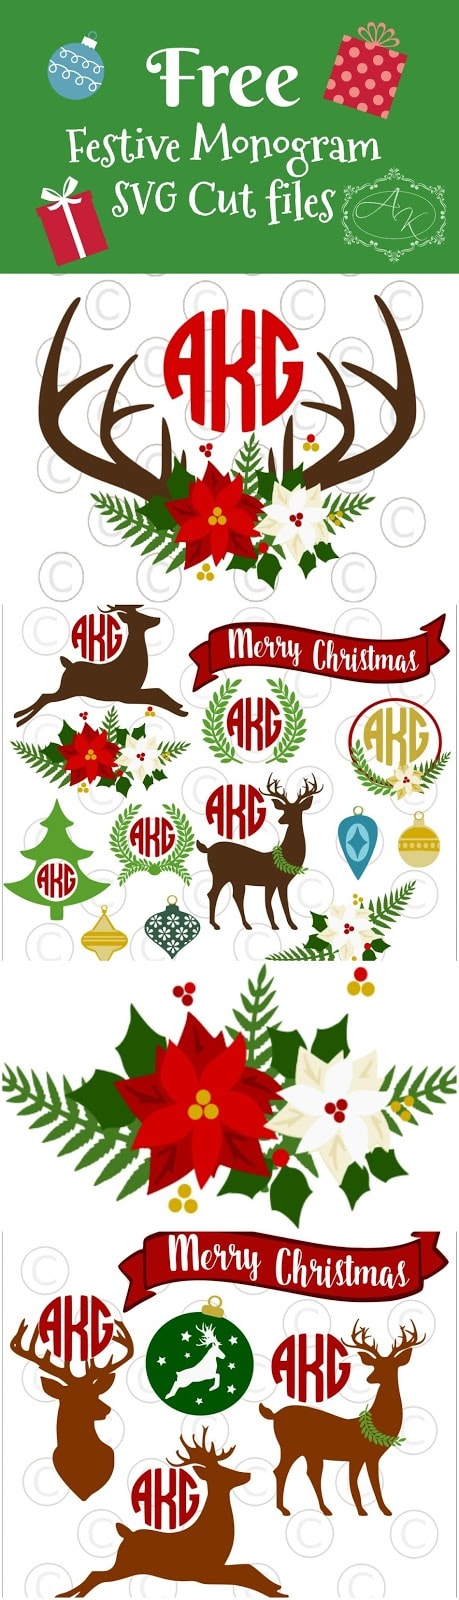 Free circle monogram SVG cut files. Christmas Svgs. Deer silhouette. Deer Antlers